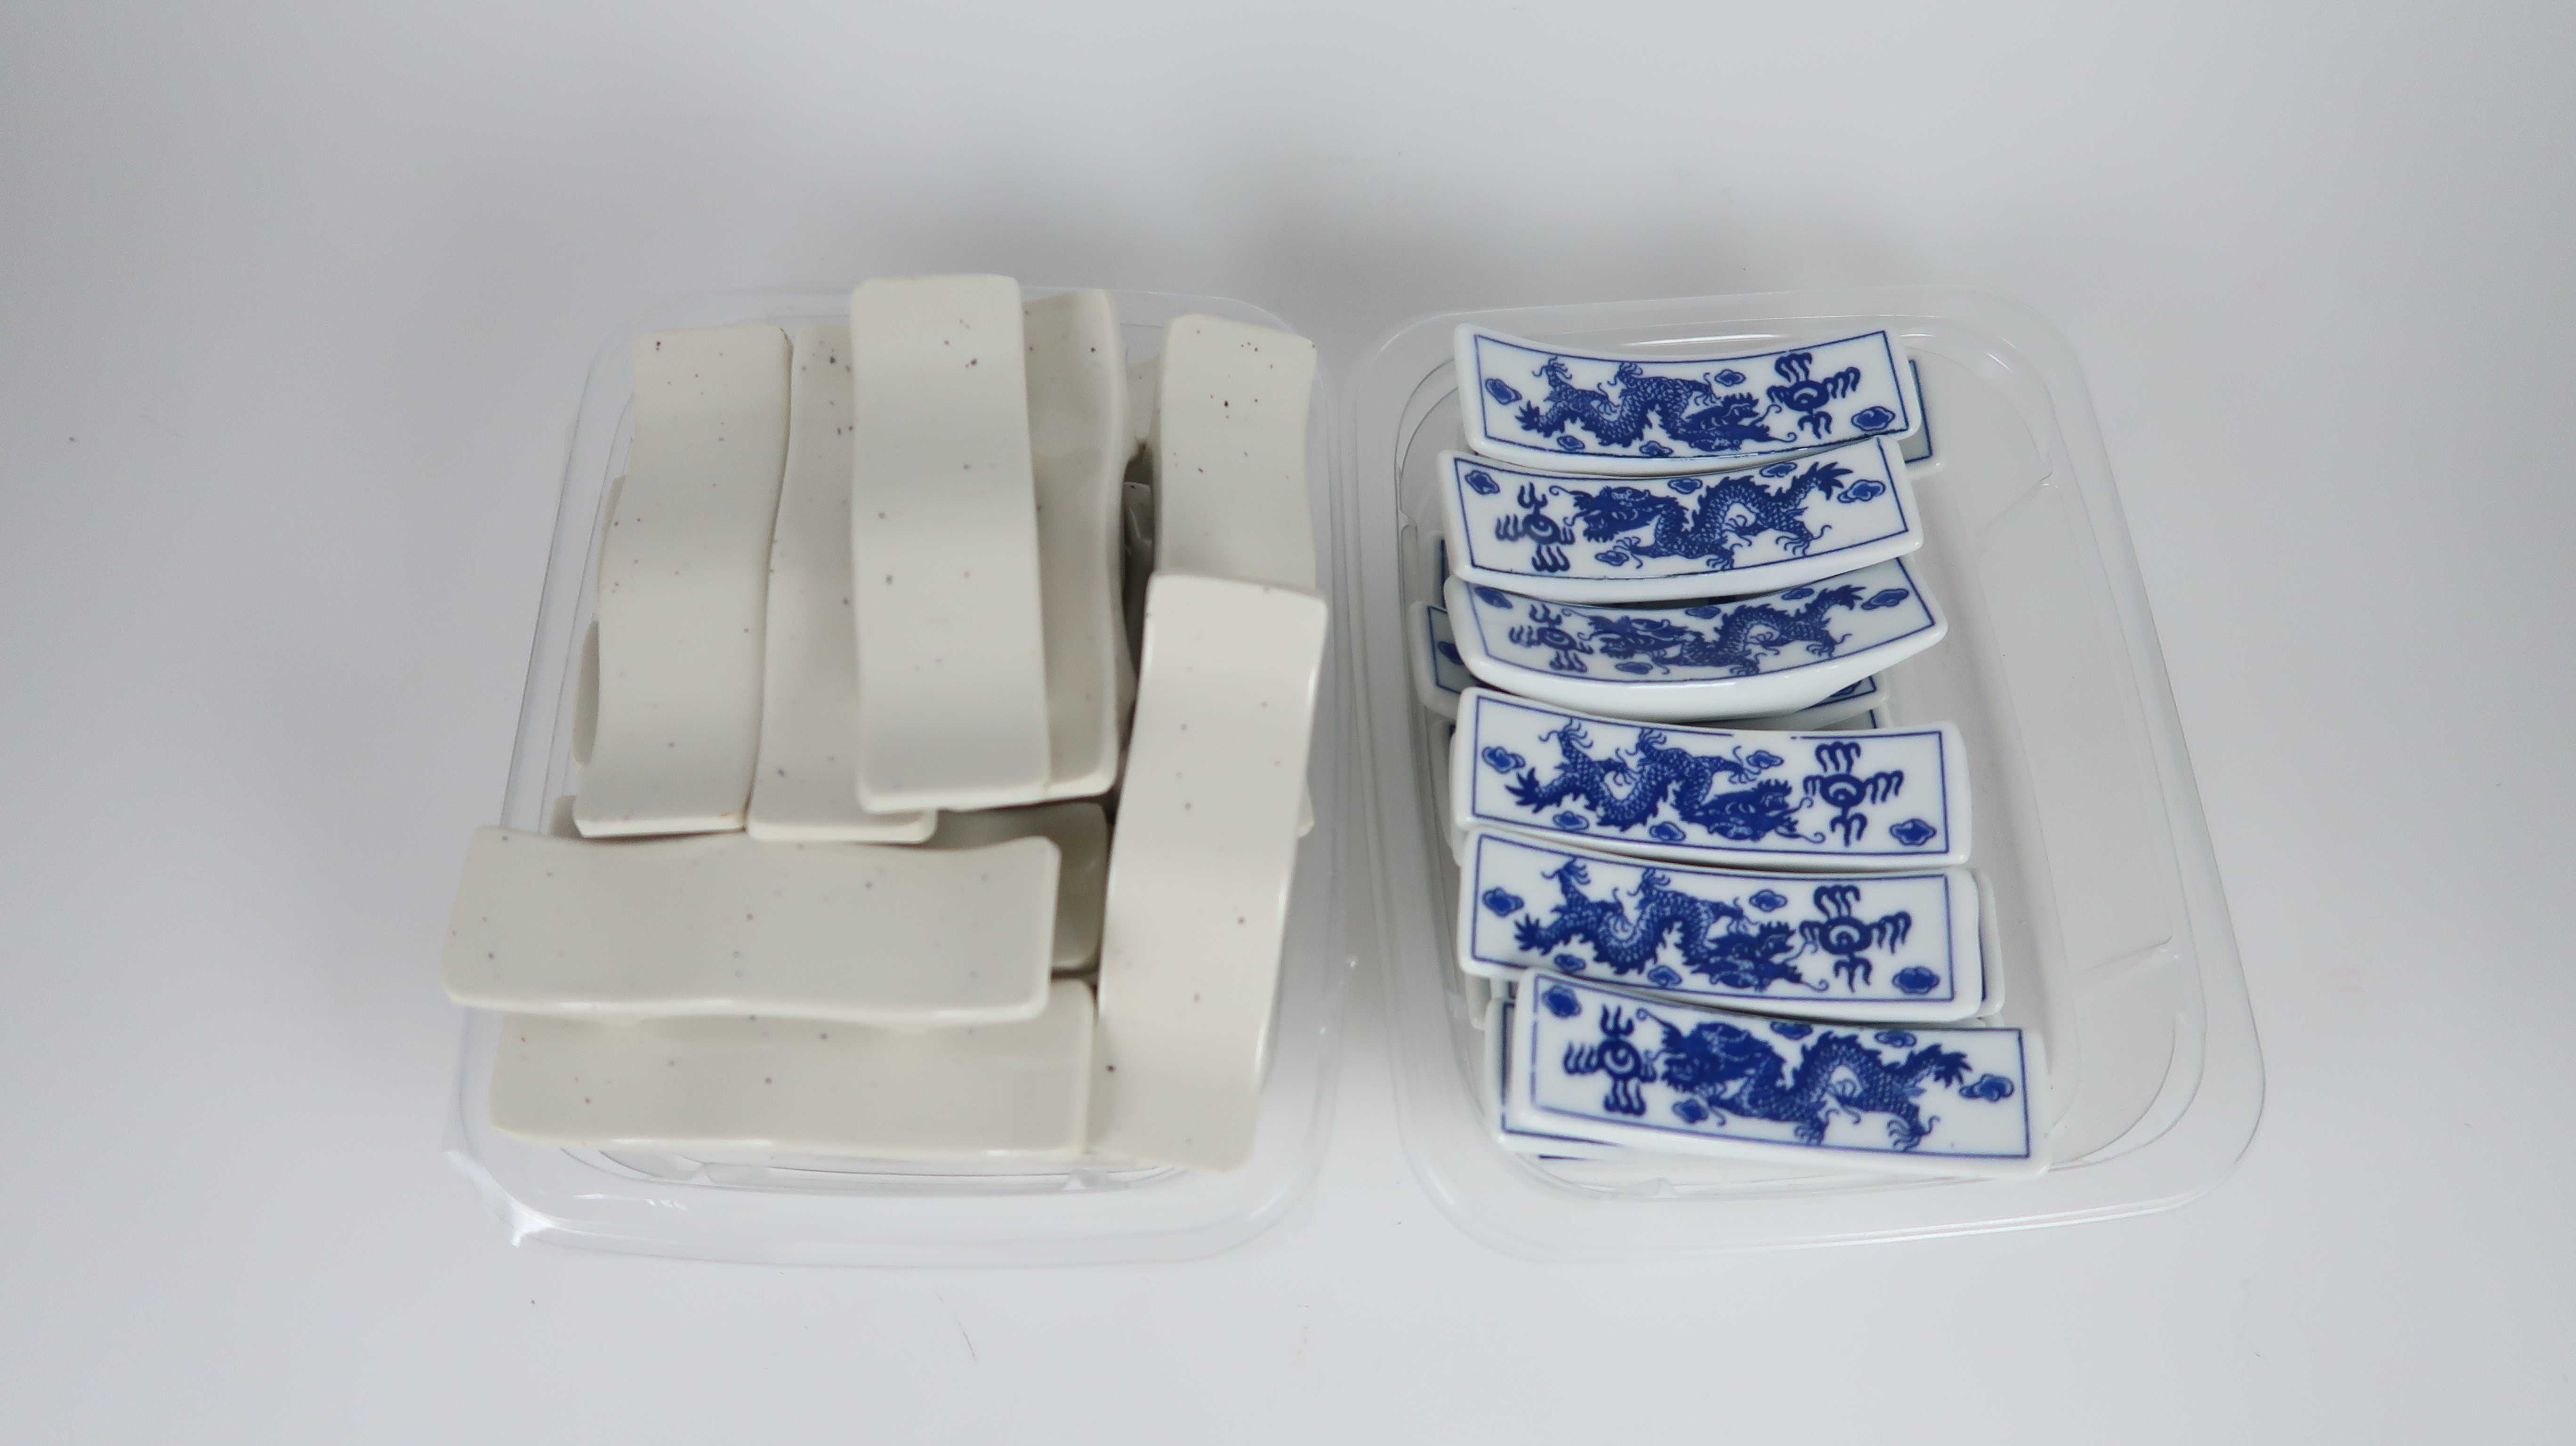 40 suportes para pauzinhos chineses / talheres em porcelana